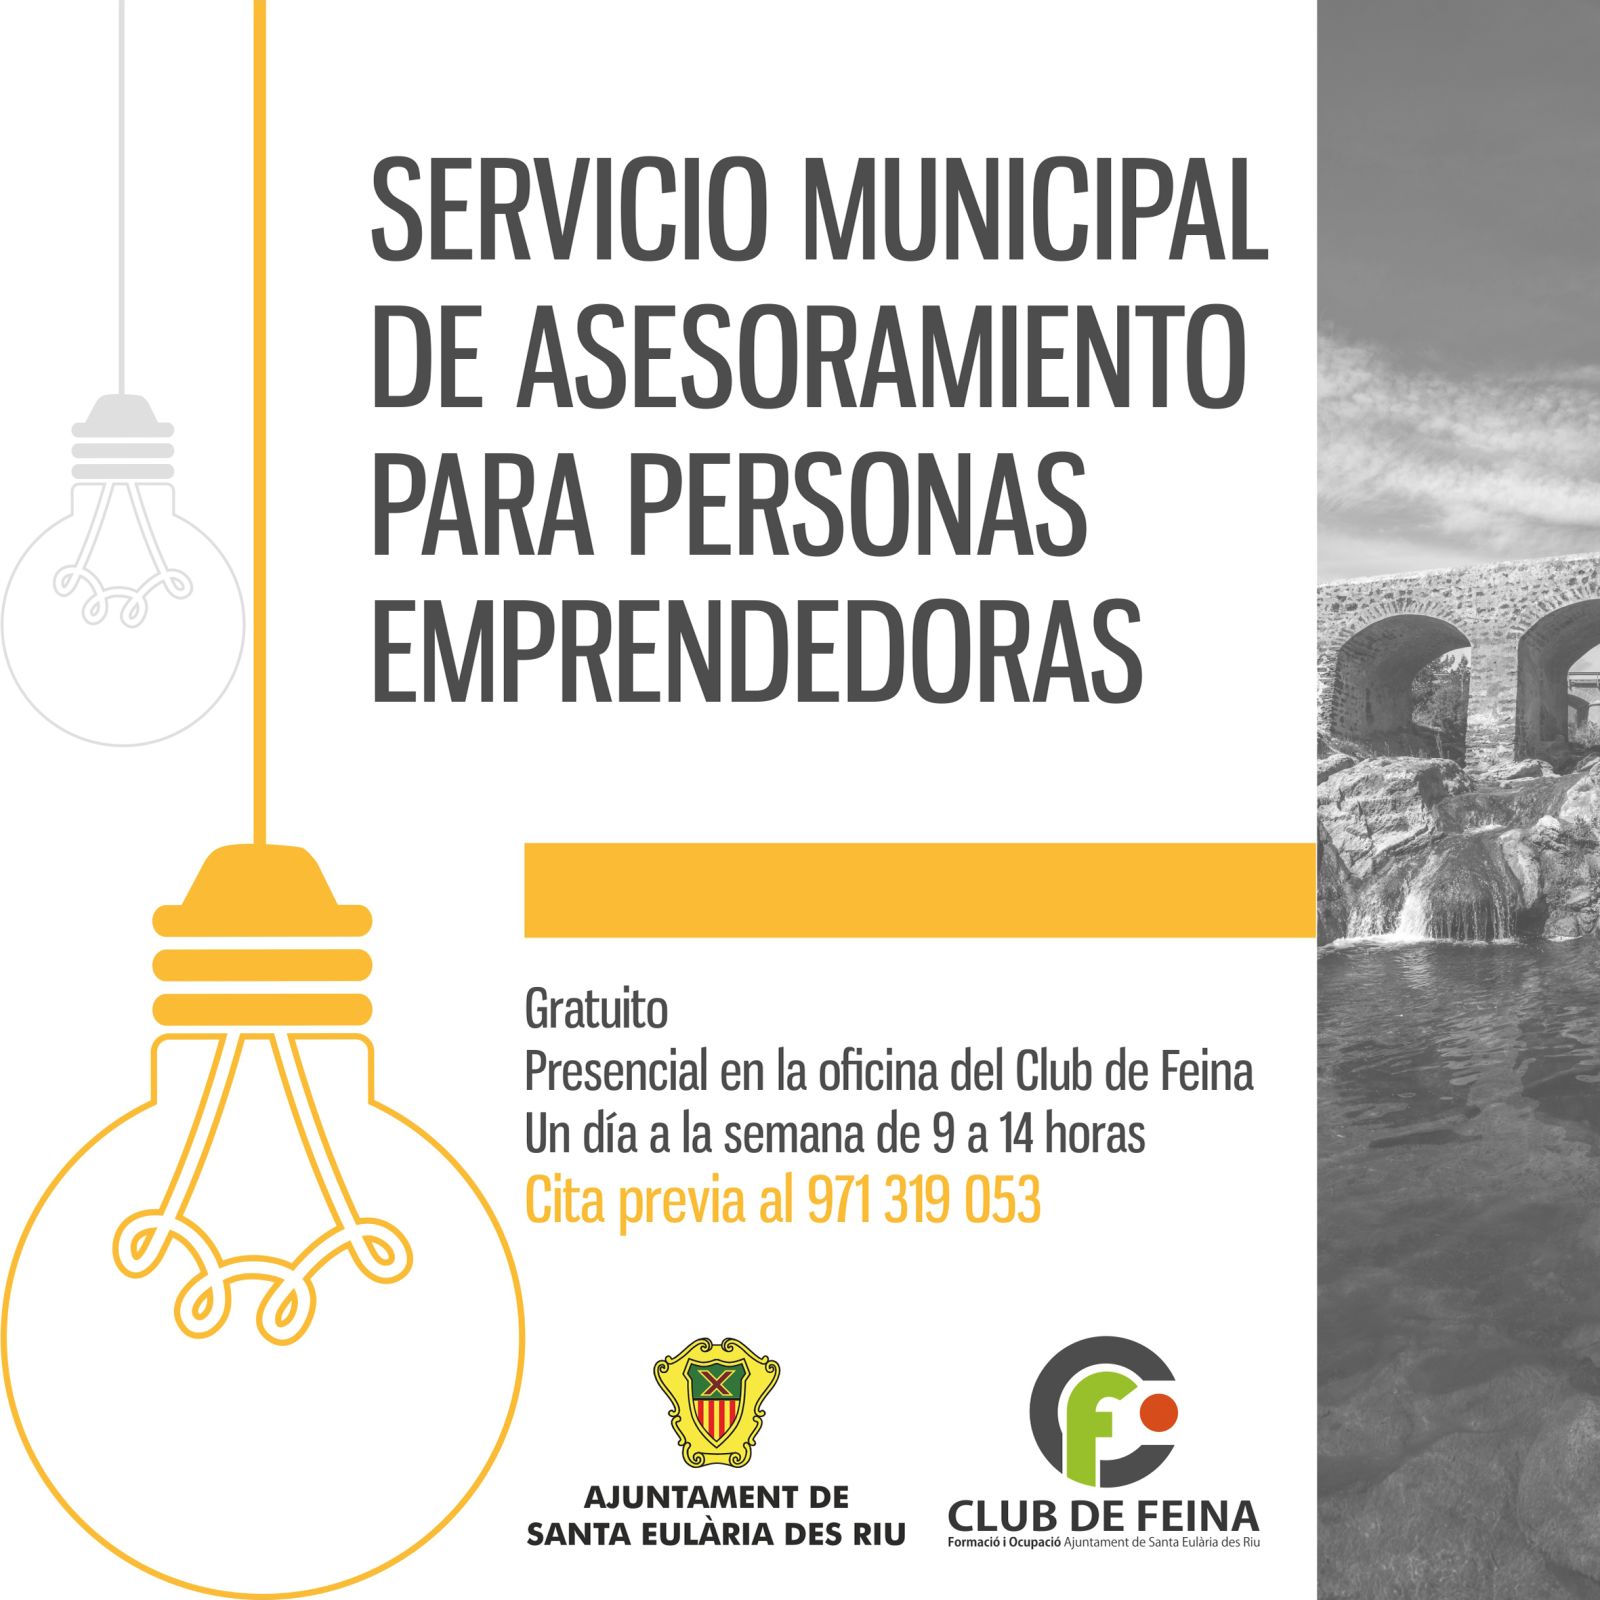 Santa Eulària abre un Servicio Municipal para Emprendedores con asesoramiento todas las semanas y talleres gratuitos específicos